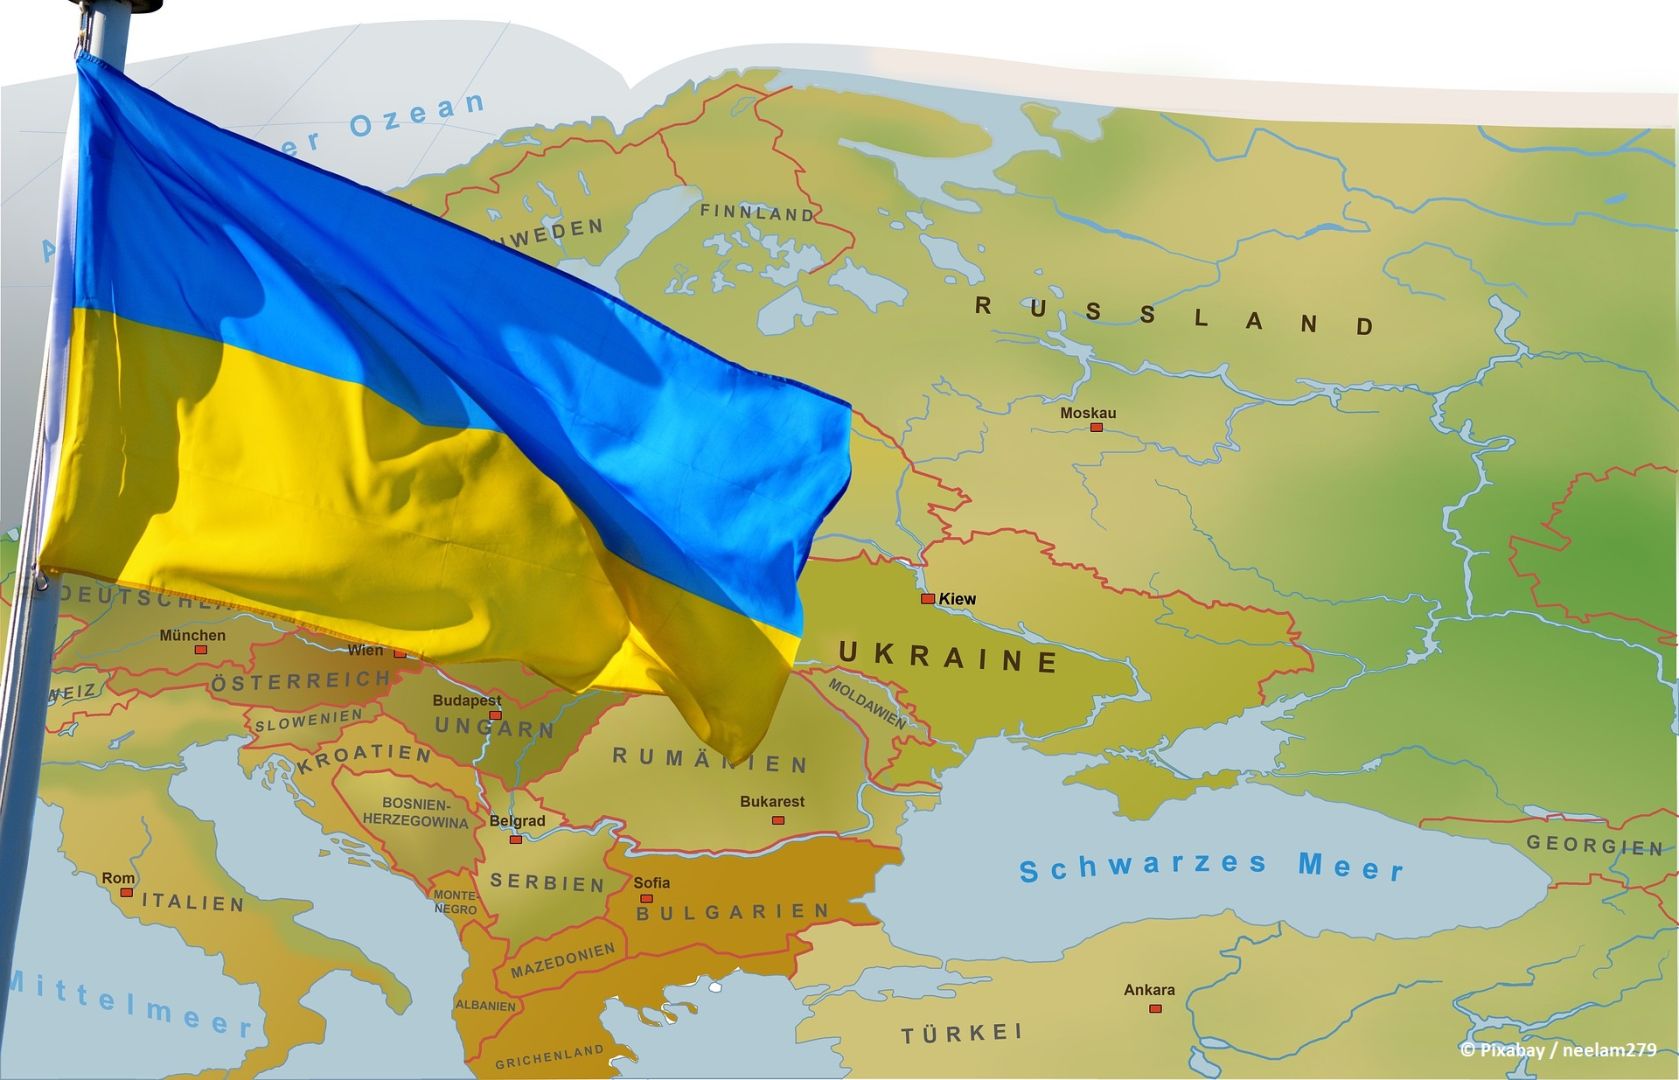 Starker Beschuss von ukrainischer Ostfront gemeldet